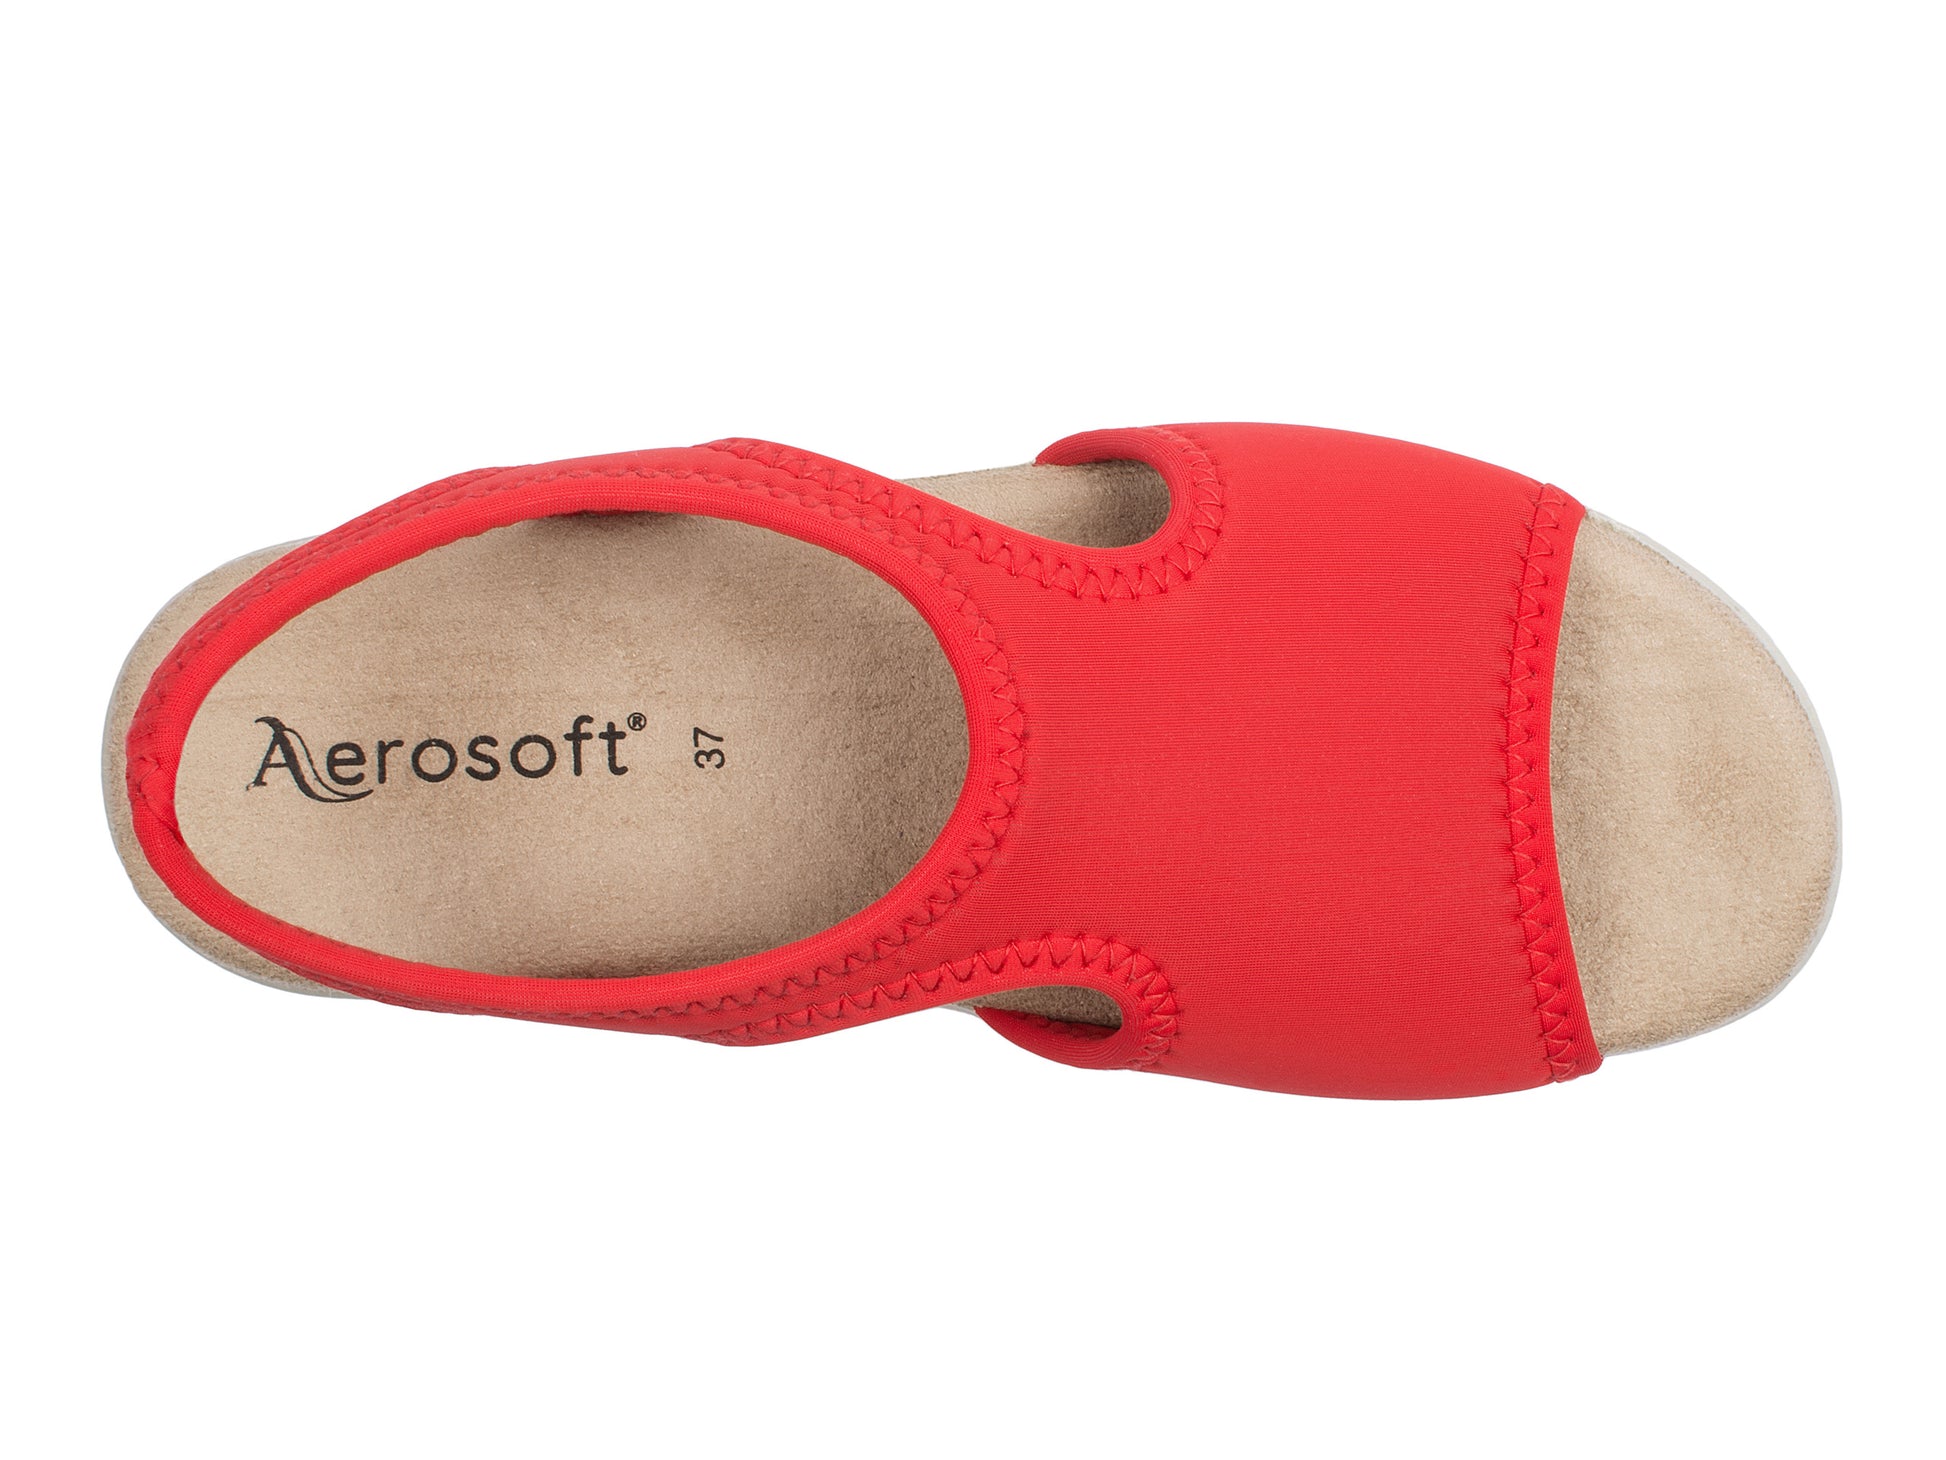 Damen Stretch Sandalette Modell Stretch 05 von Aerosoft in der Farbe rot von oben